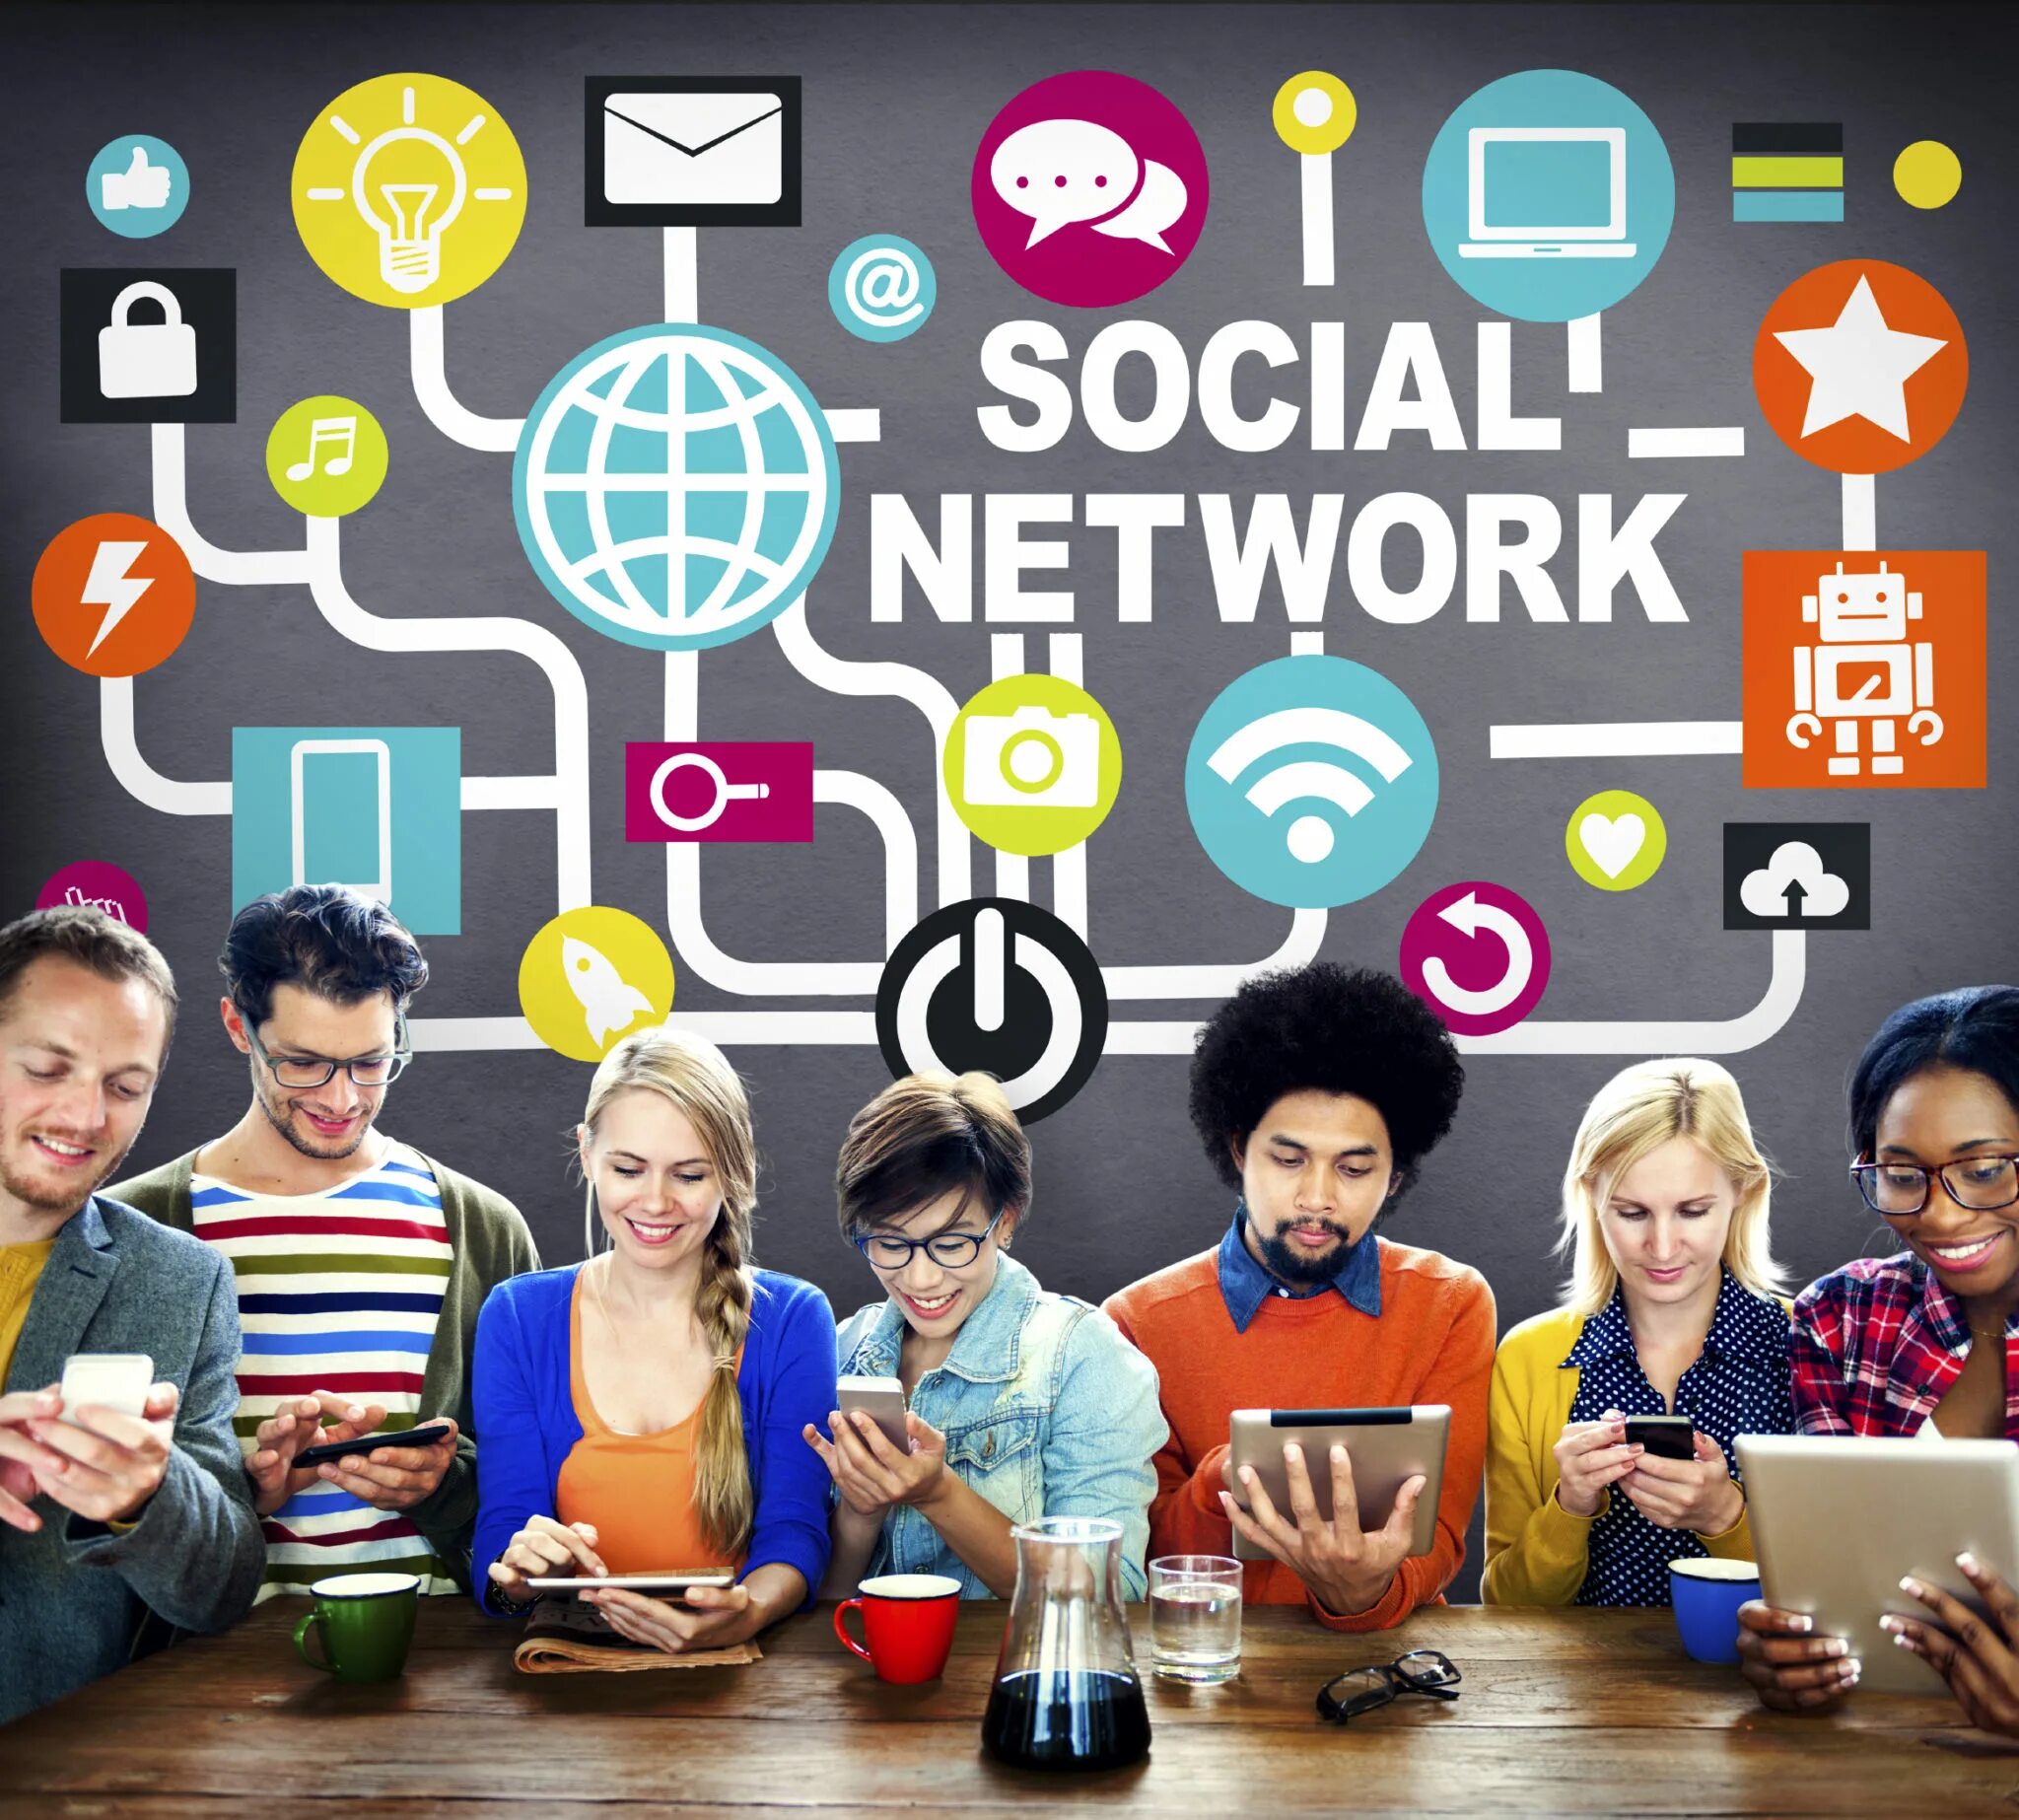 Shows social. В социальных сетях. Социальный. Социальная сеть (интернет). Сообщества в социальных сетях.